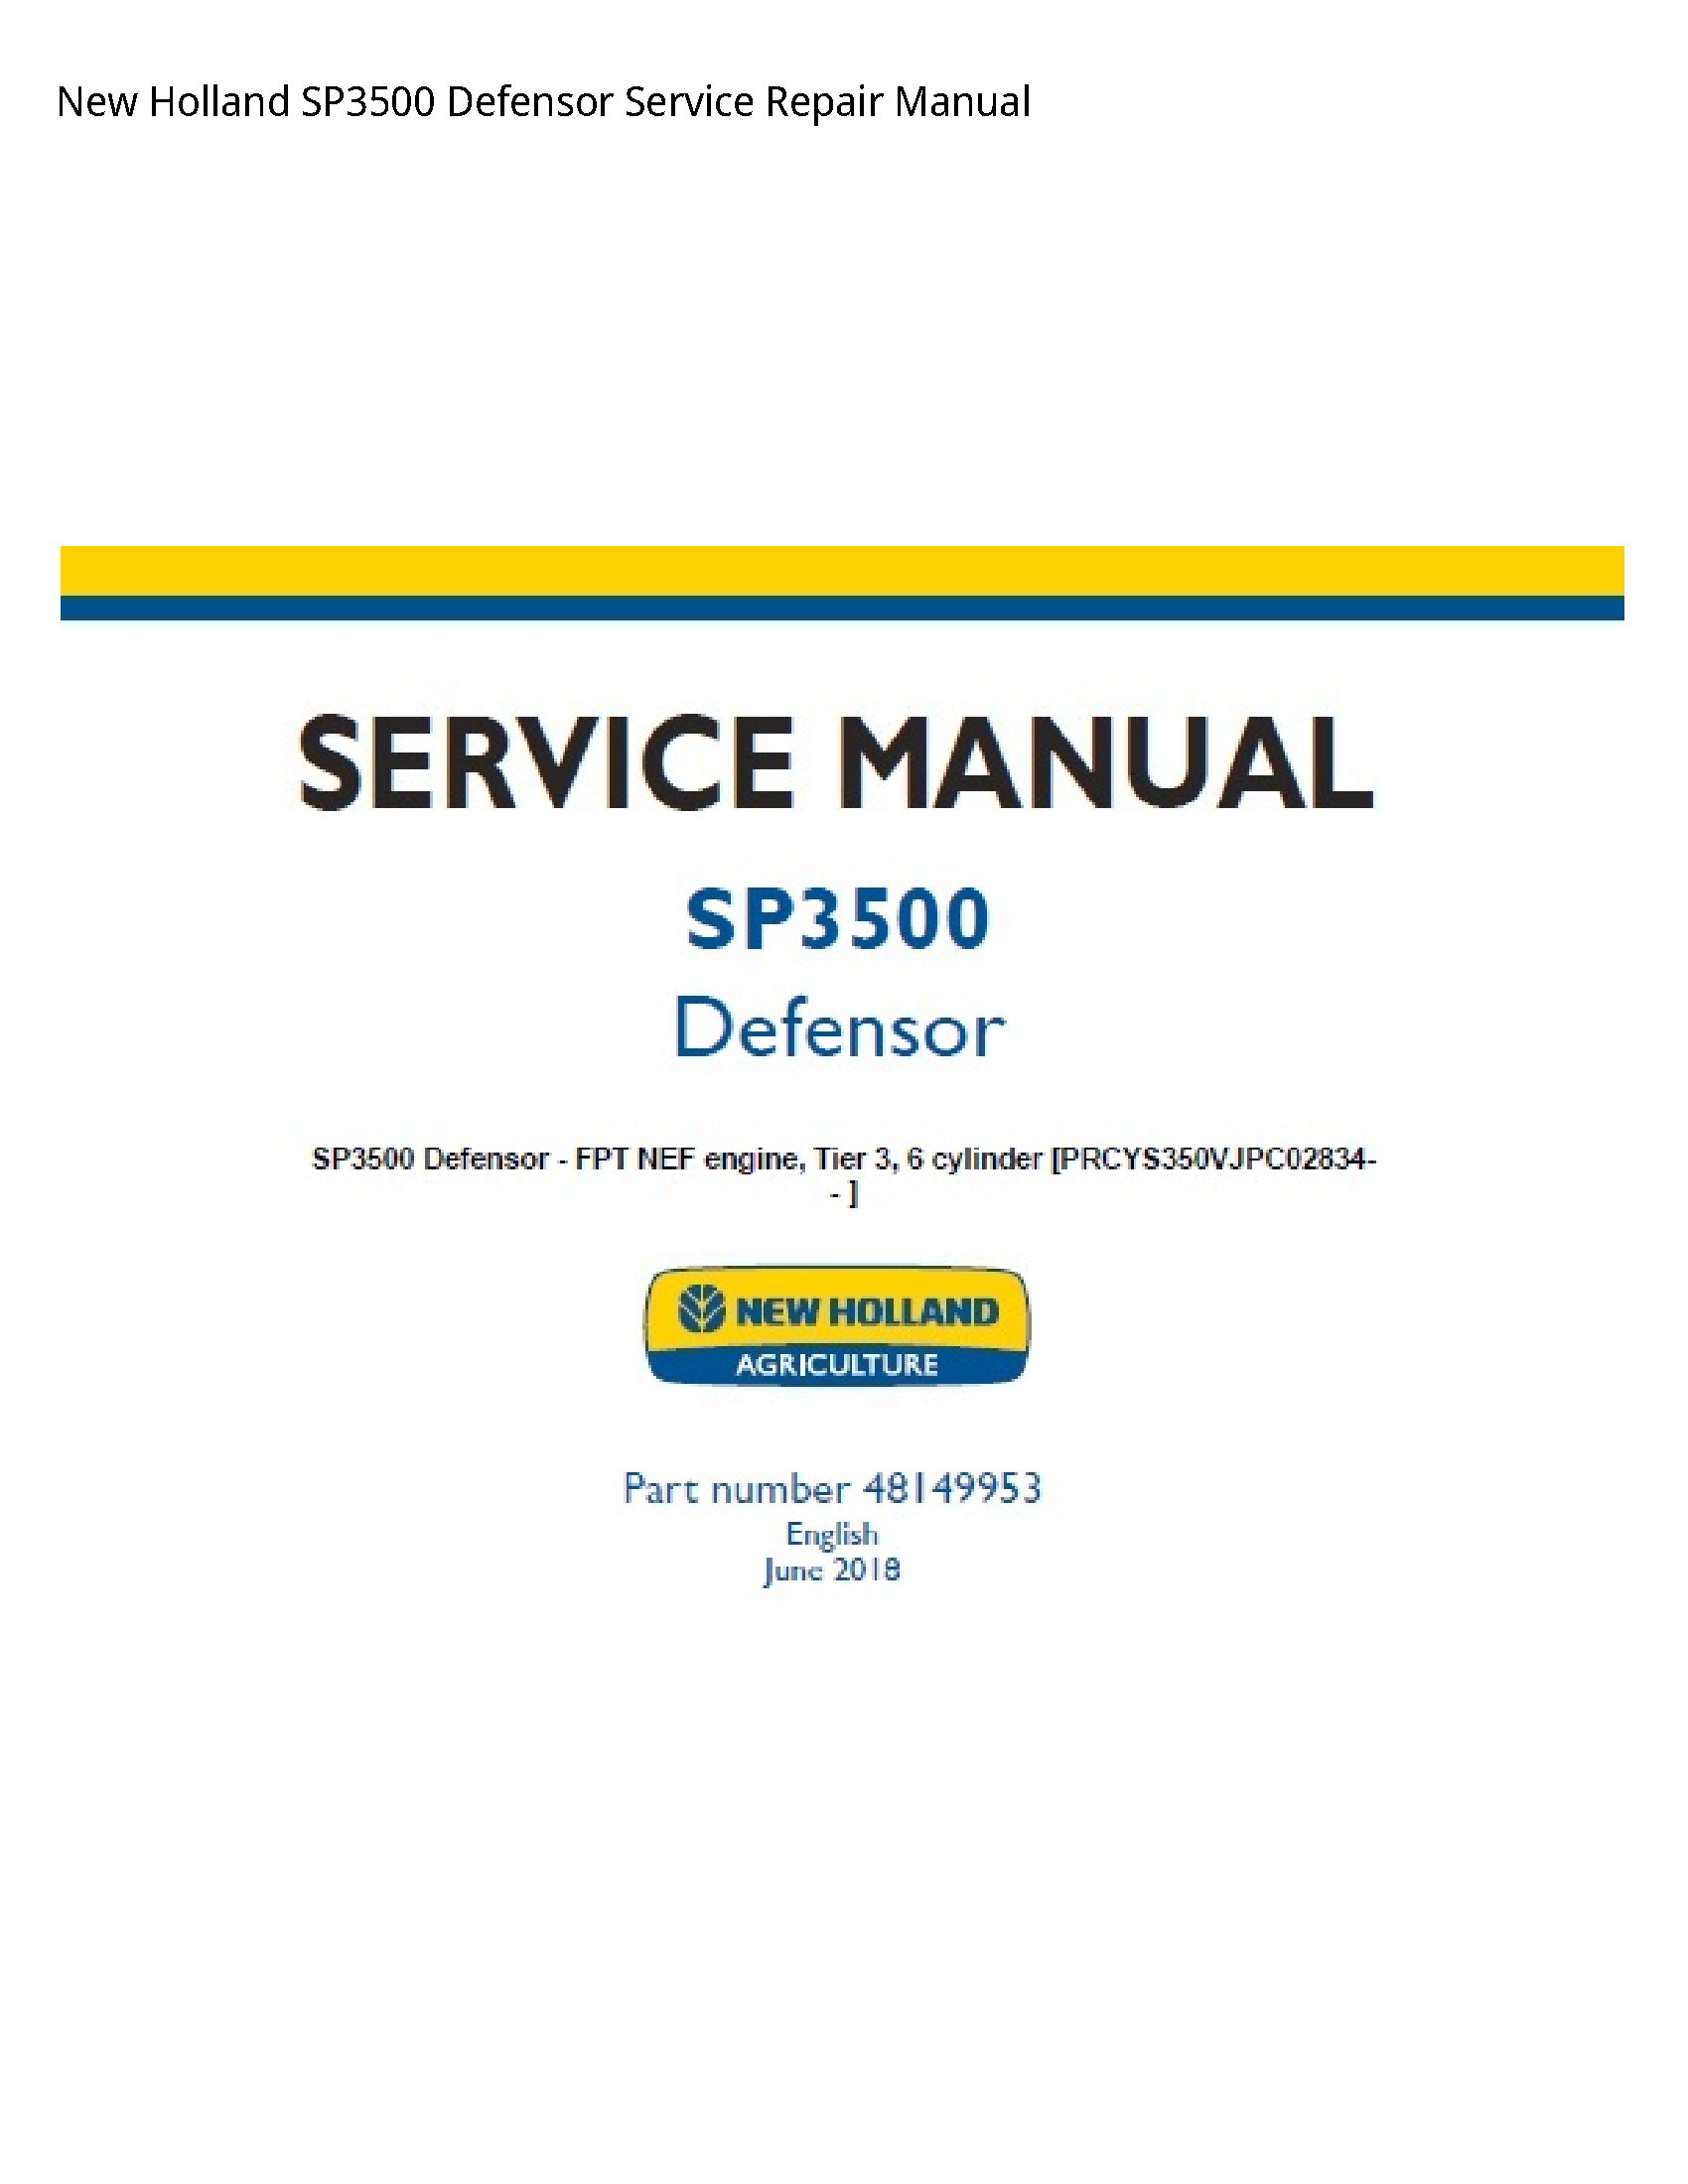 New Holland SP3500 Defensor manual